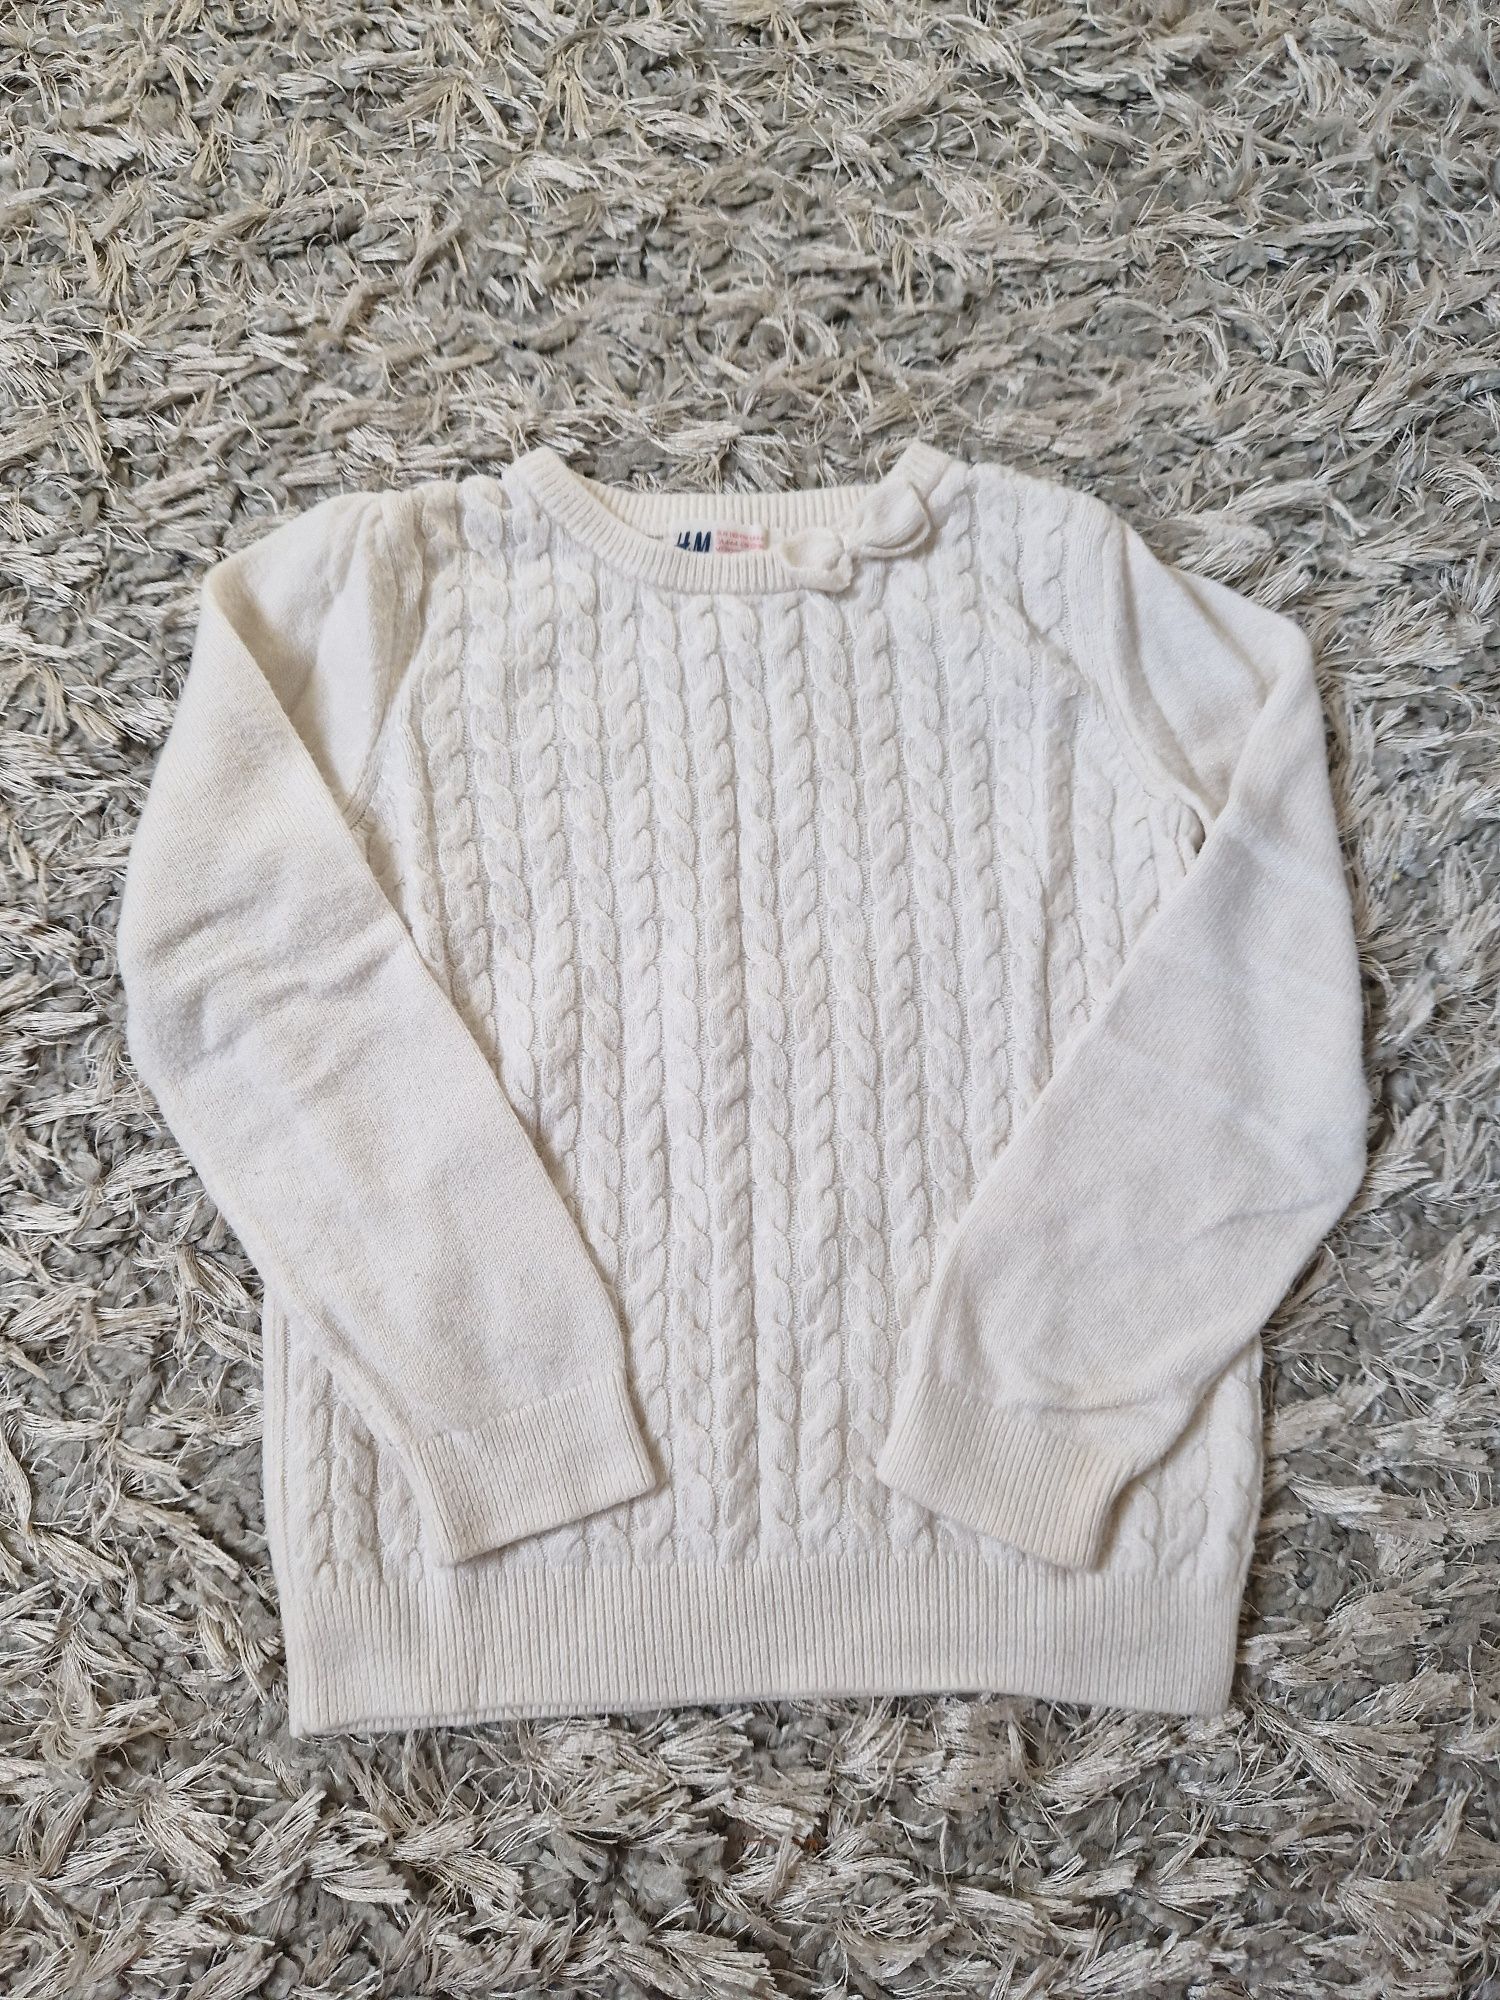 Biały sweterek pleciony dla dziewczynki H&M r. 110/116cm